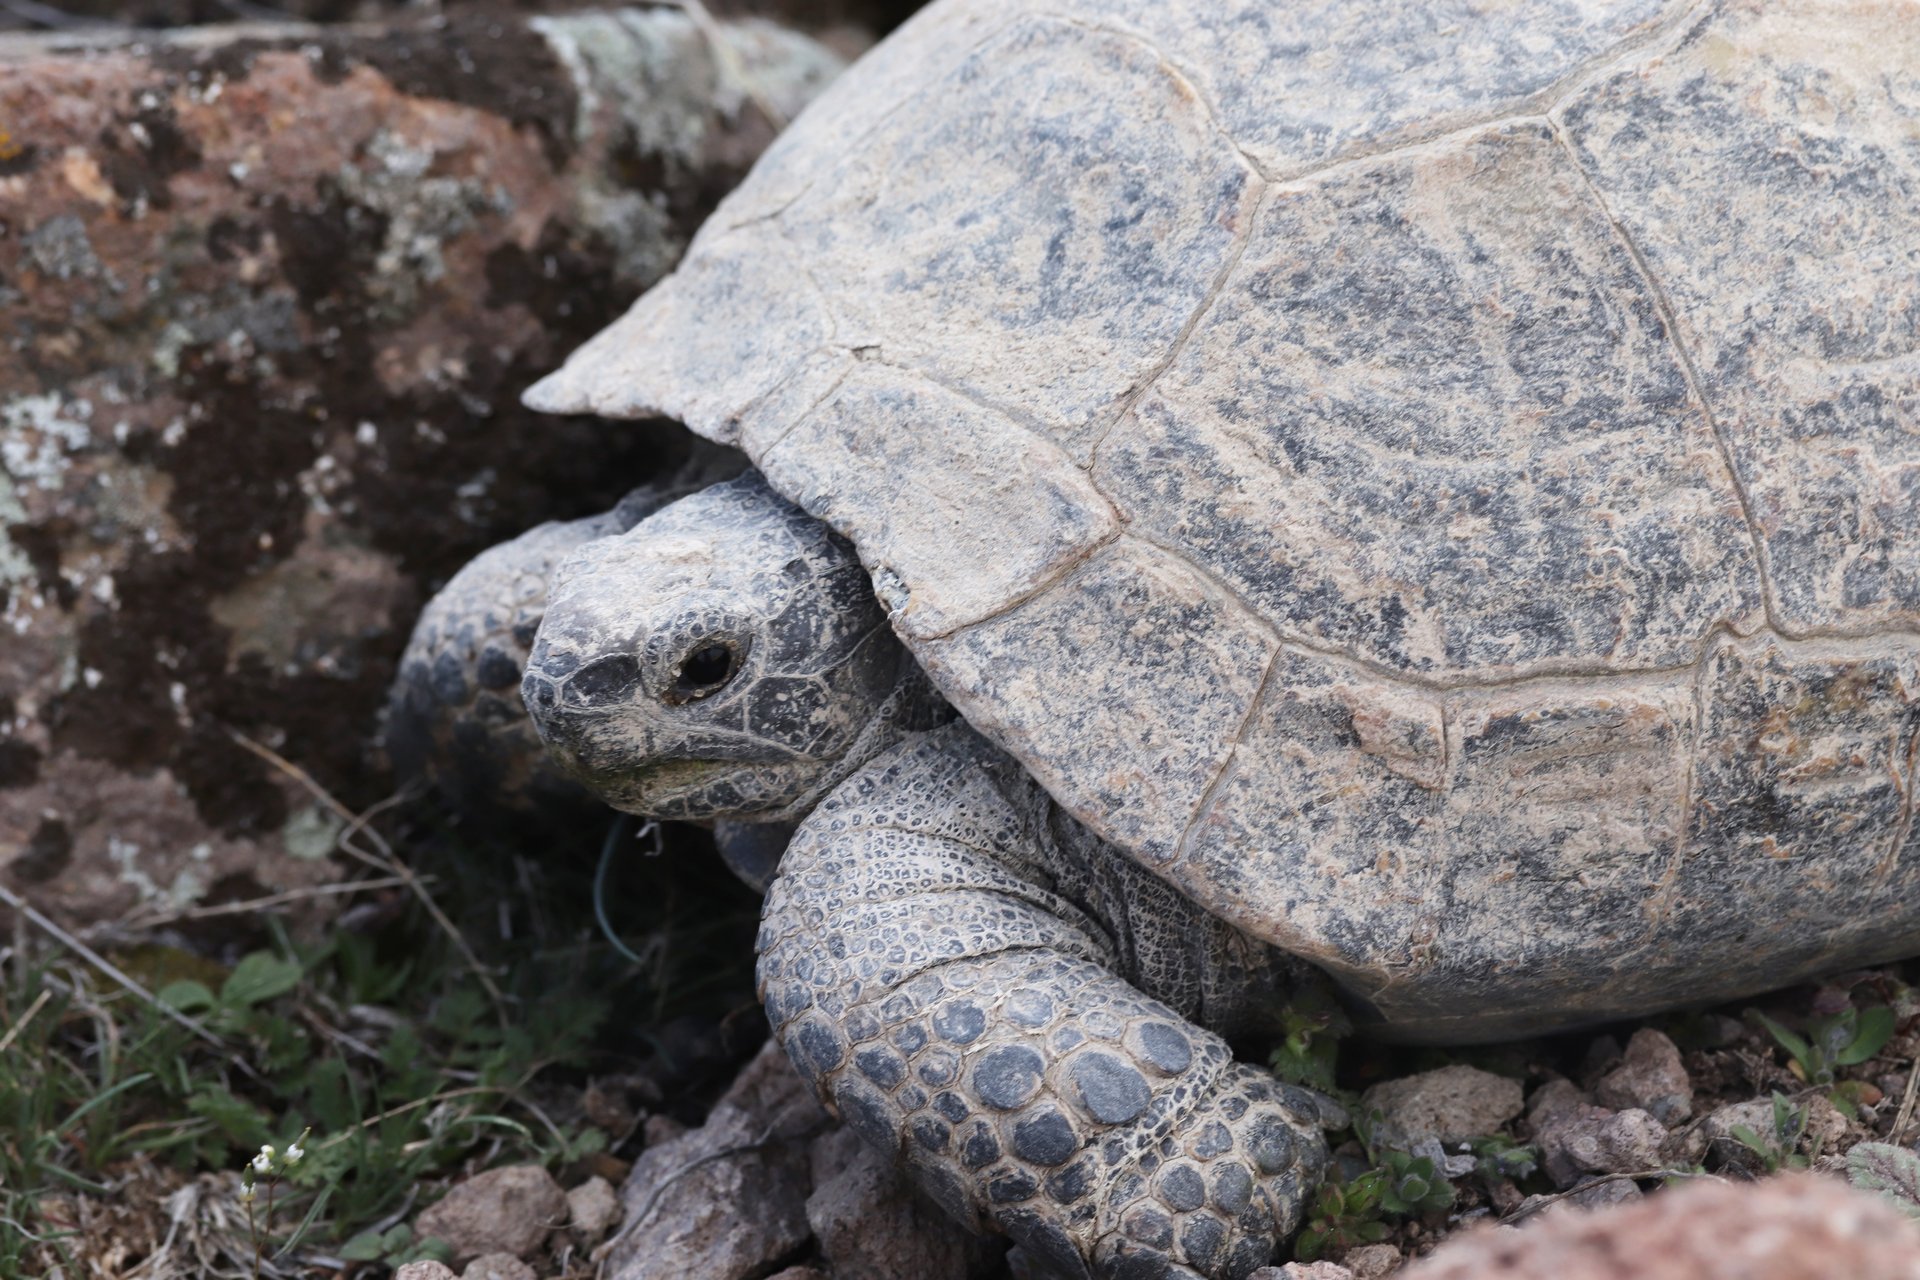 Schildpadden als huisdier de basisprincipes van de verzorging